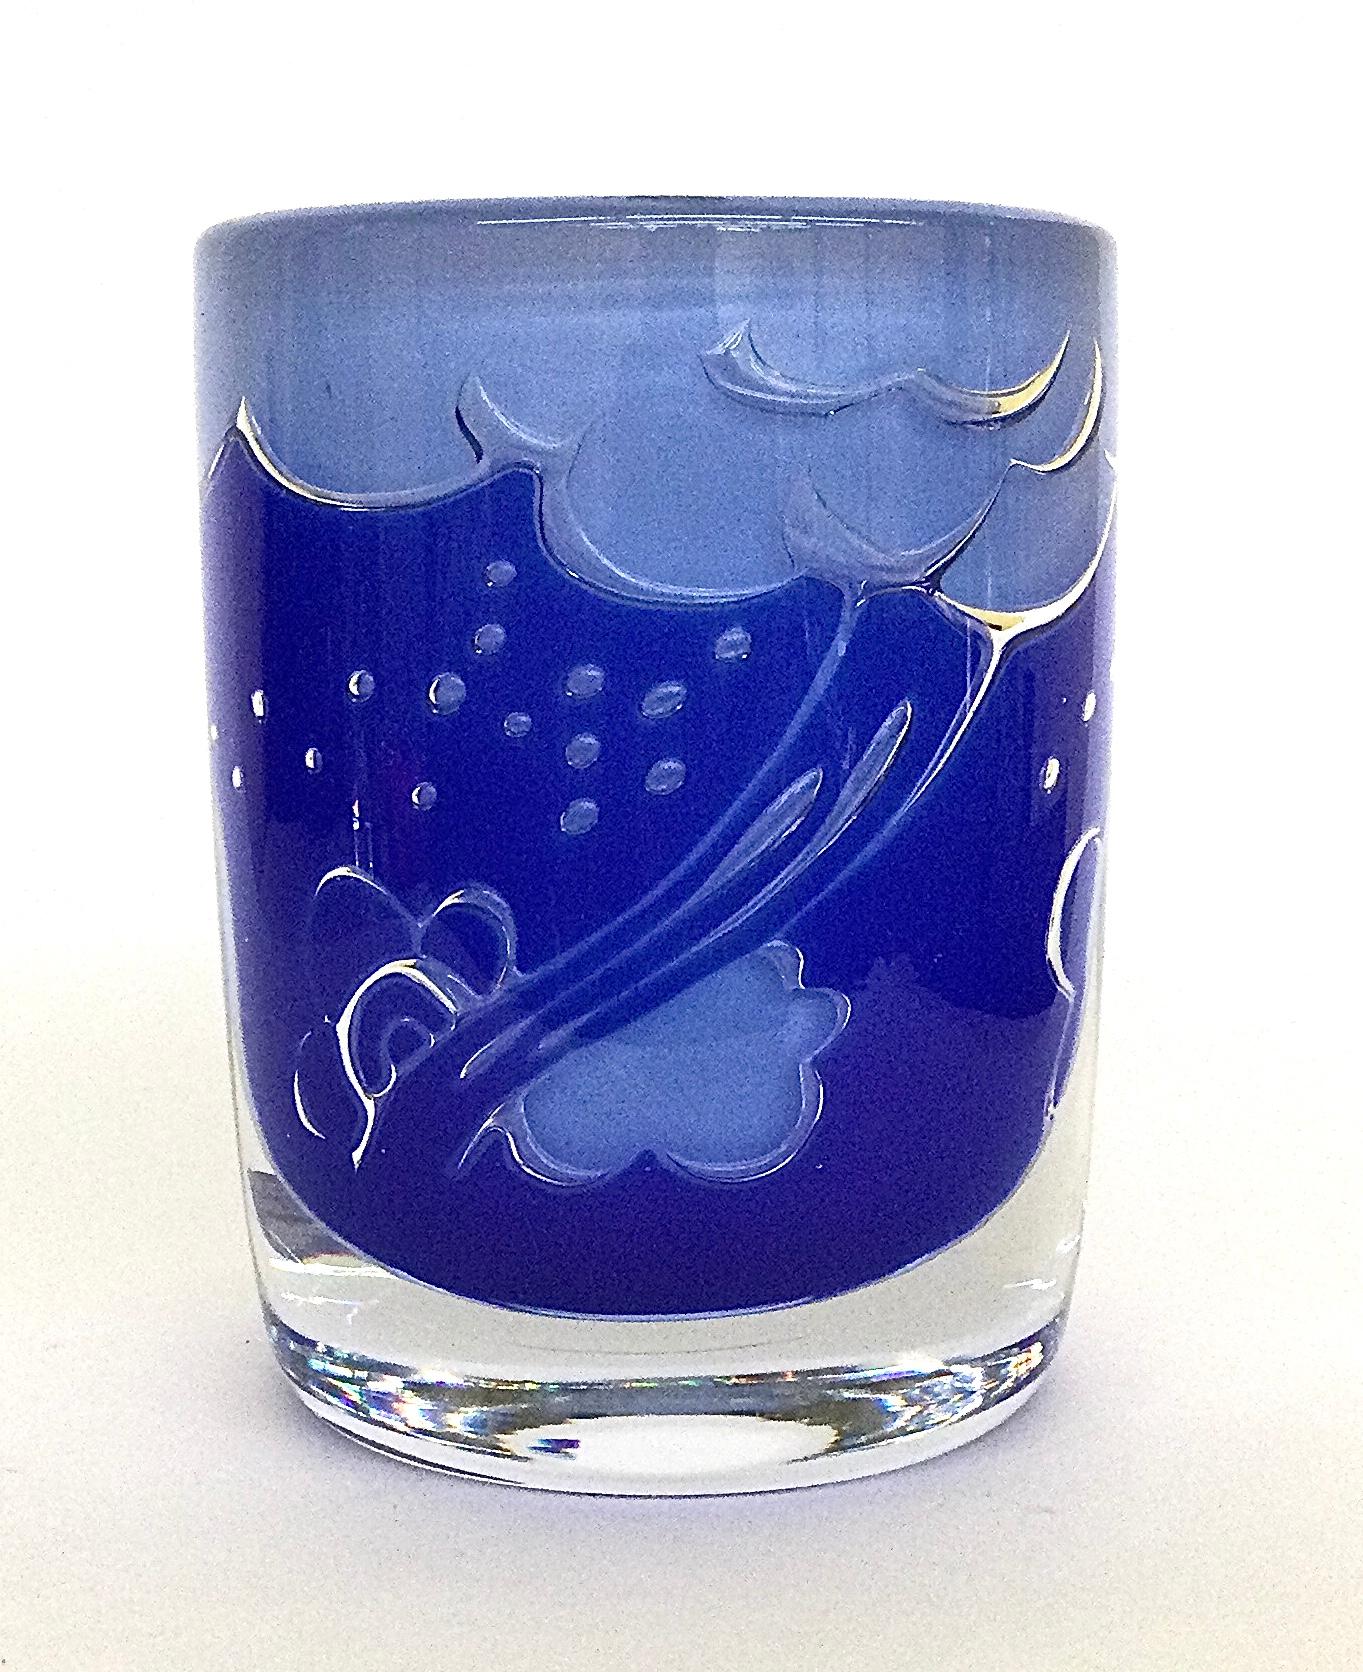 Spectaculaire vase ariel nuageux conçu par le designer suédois Olle Alberius, signé et daté Orrefors Gallery 1986. La couleur bleue est très vibrante et s'affiche très bien comme une pièce d'accent très haut de gamme. 

Olle Alberius est l'un des